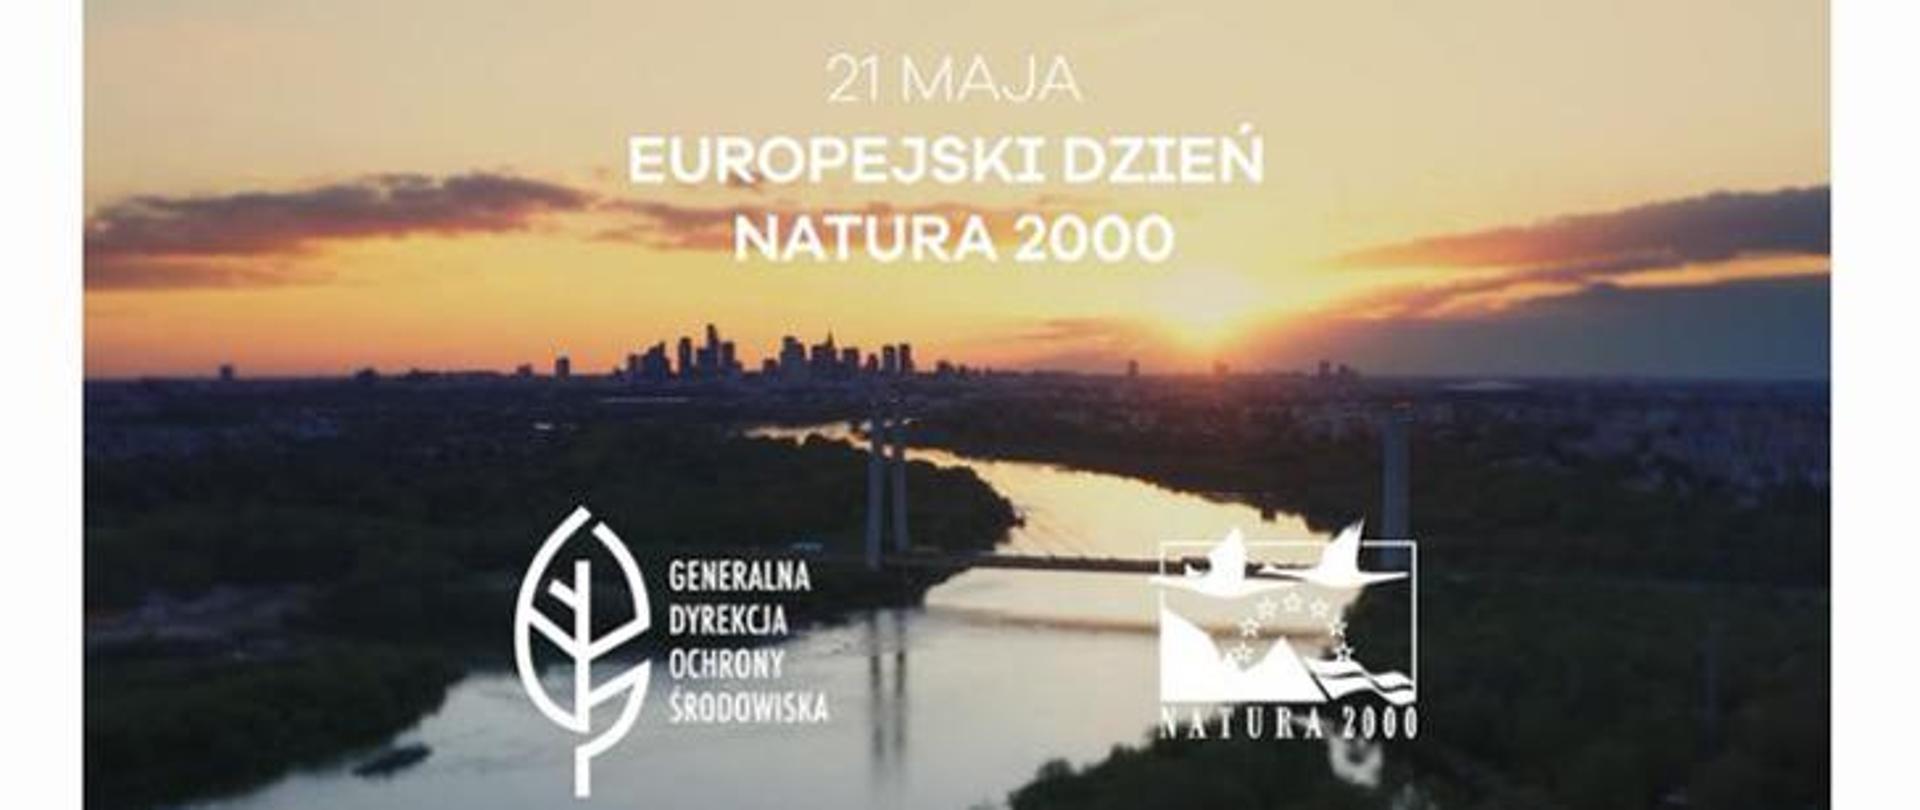 Logo GDOŚ, Natura 2000, napis 21 maja Europejski Dzień Natura 2000 w tle rzeka w oddali budynki 